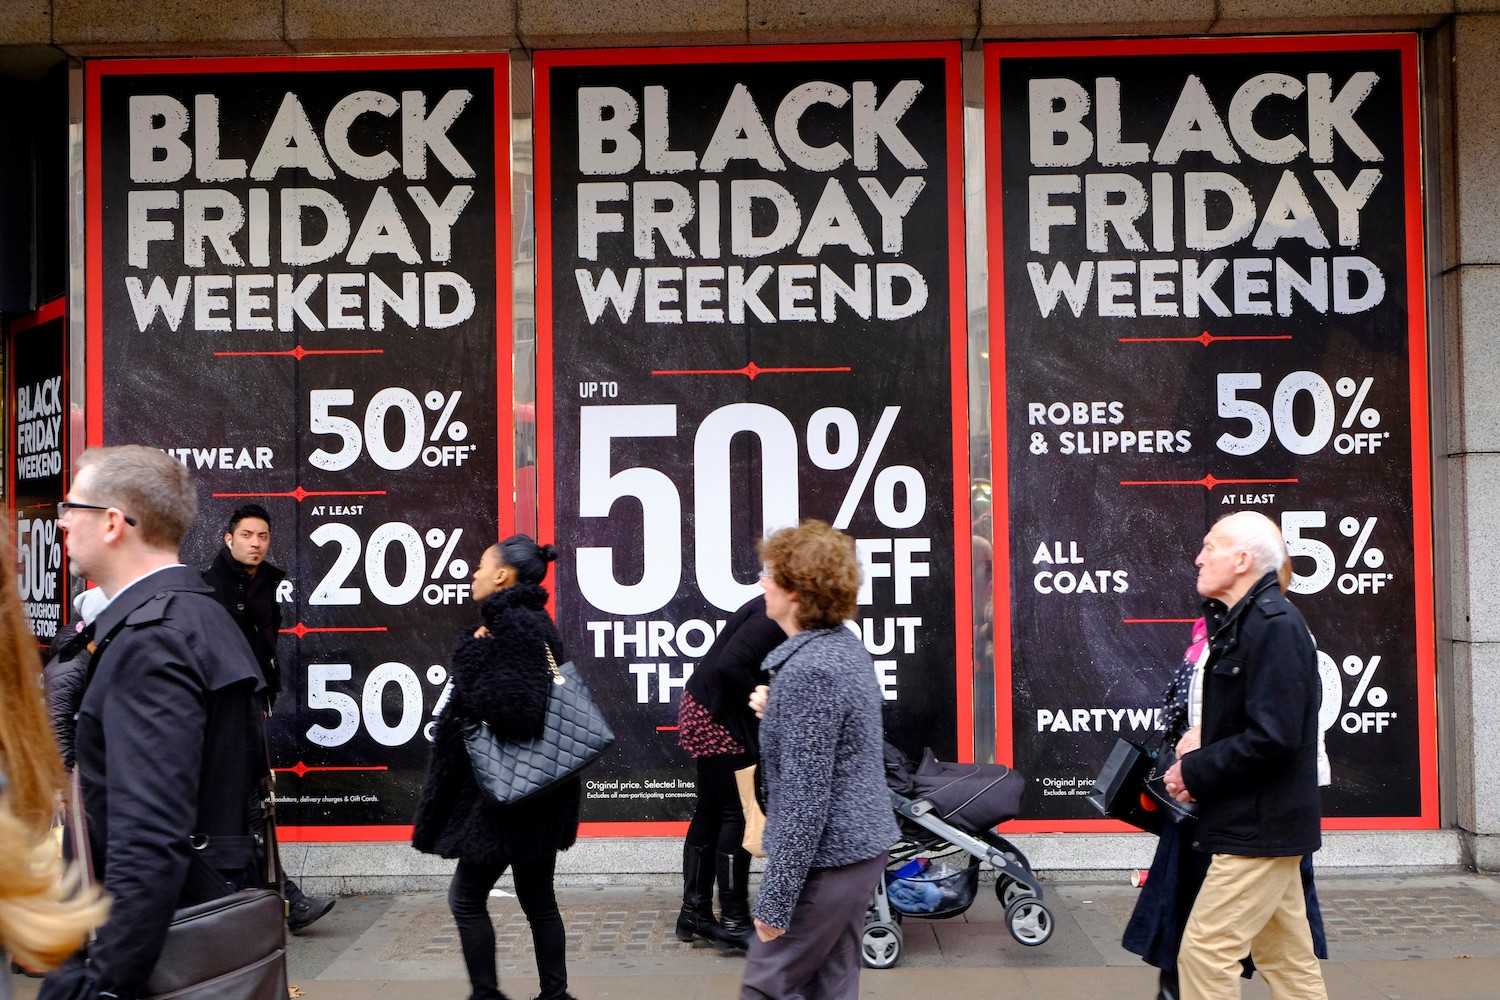 Doanh số bán hàng trực tuyến Black Friday ở Mỹ tăng 23% so với năm ngoái